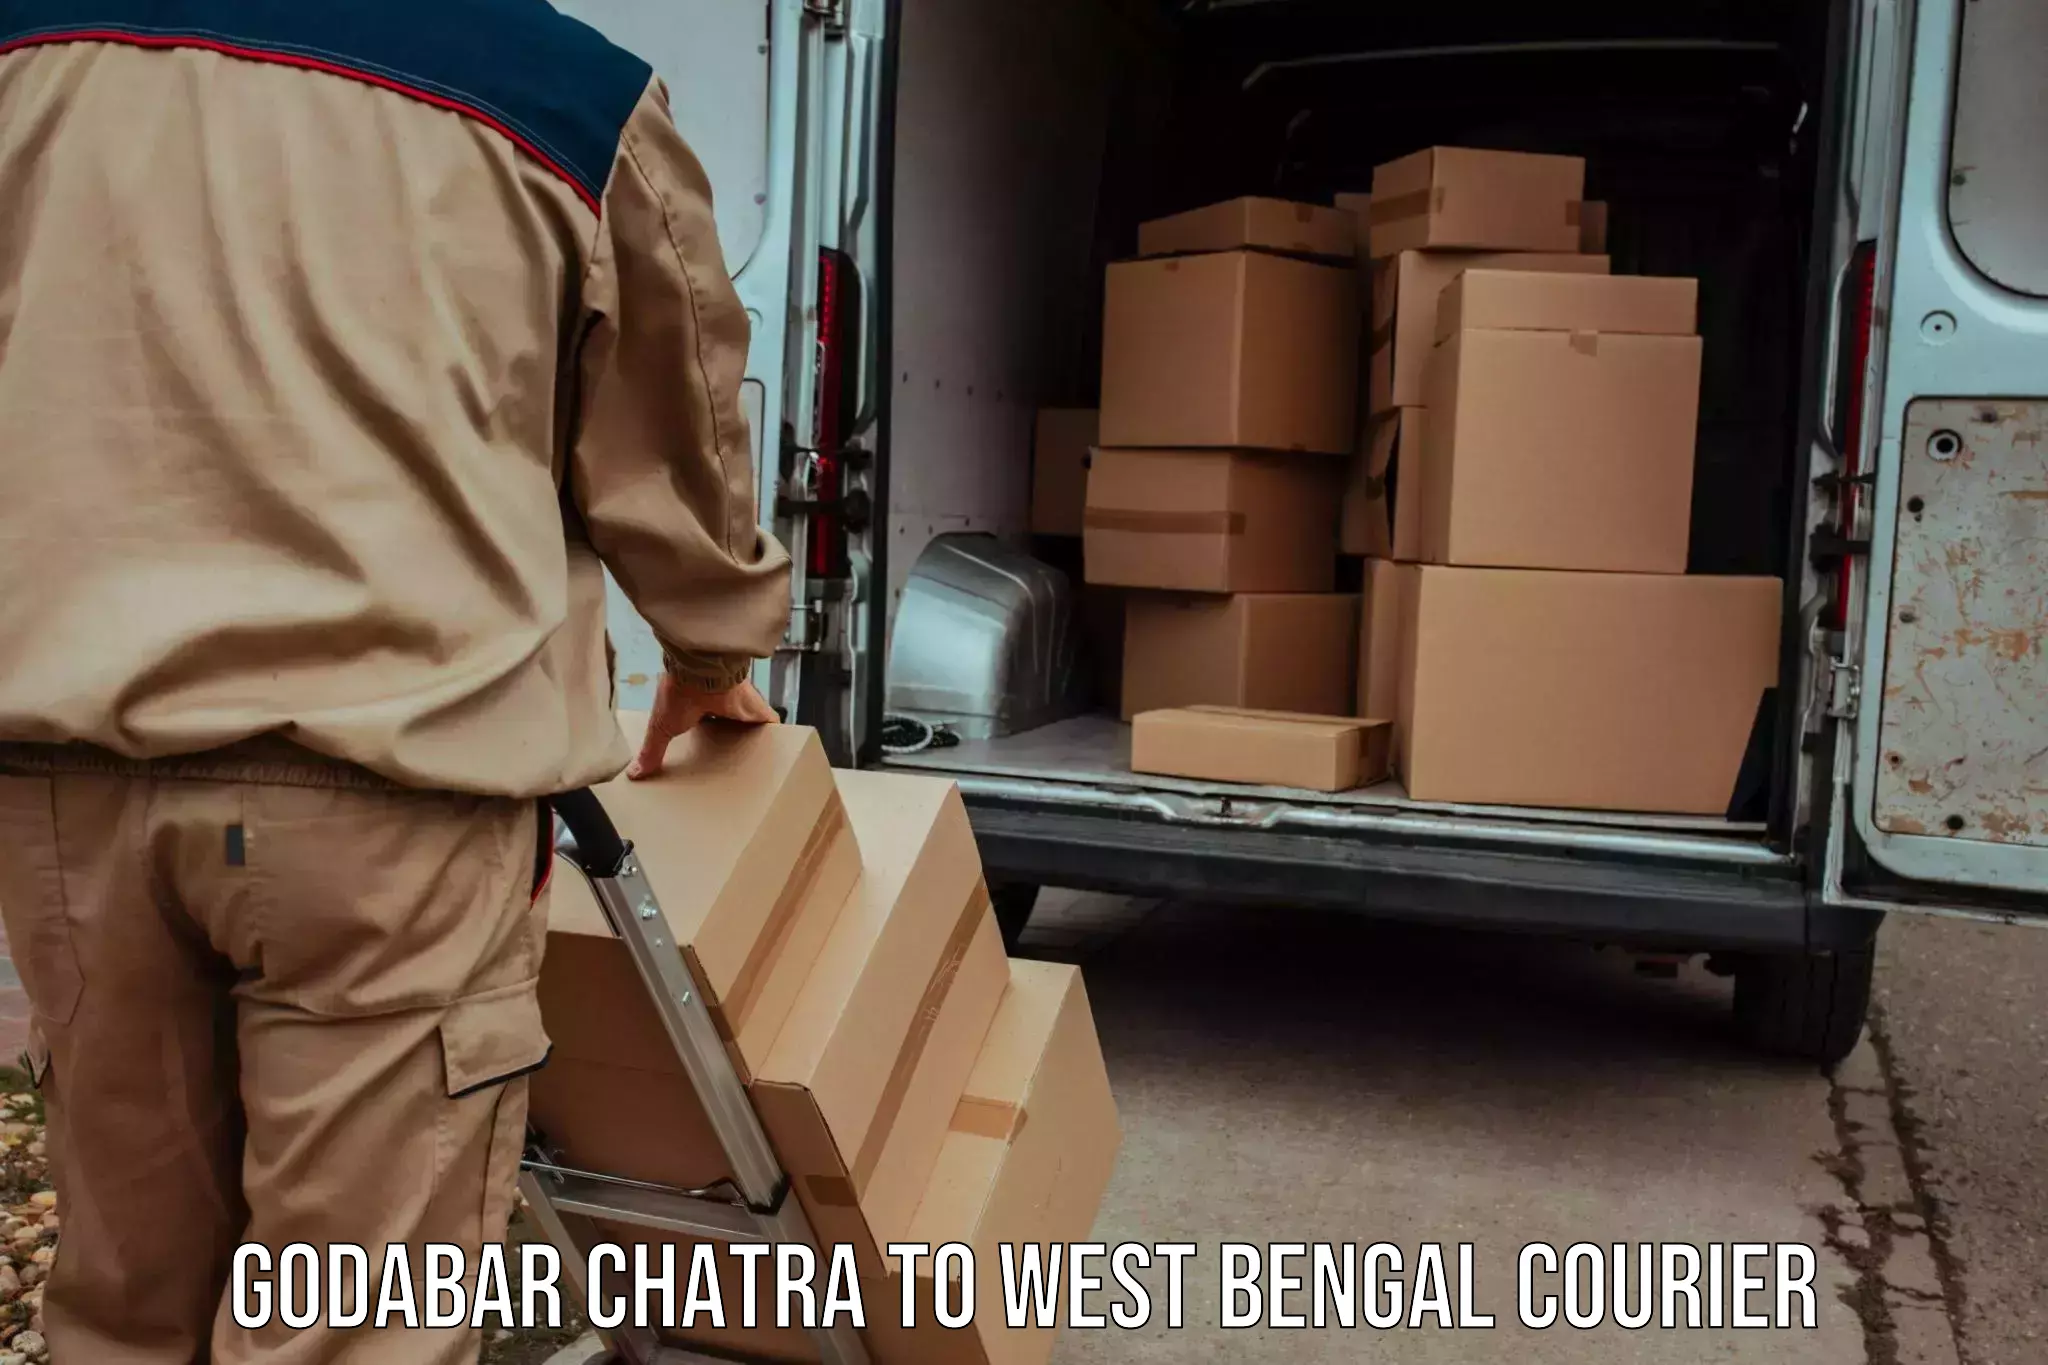 Express mail solutions Godabar Chatra to Kolkata